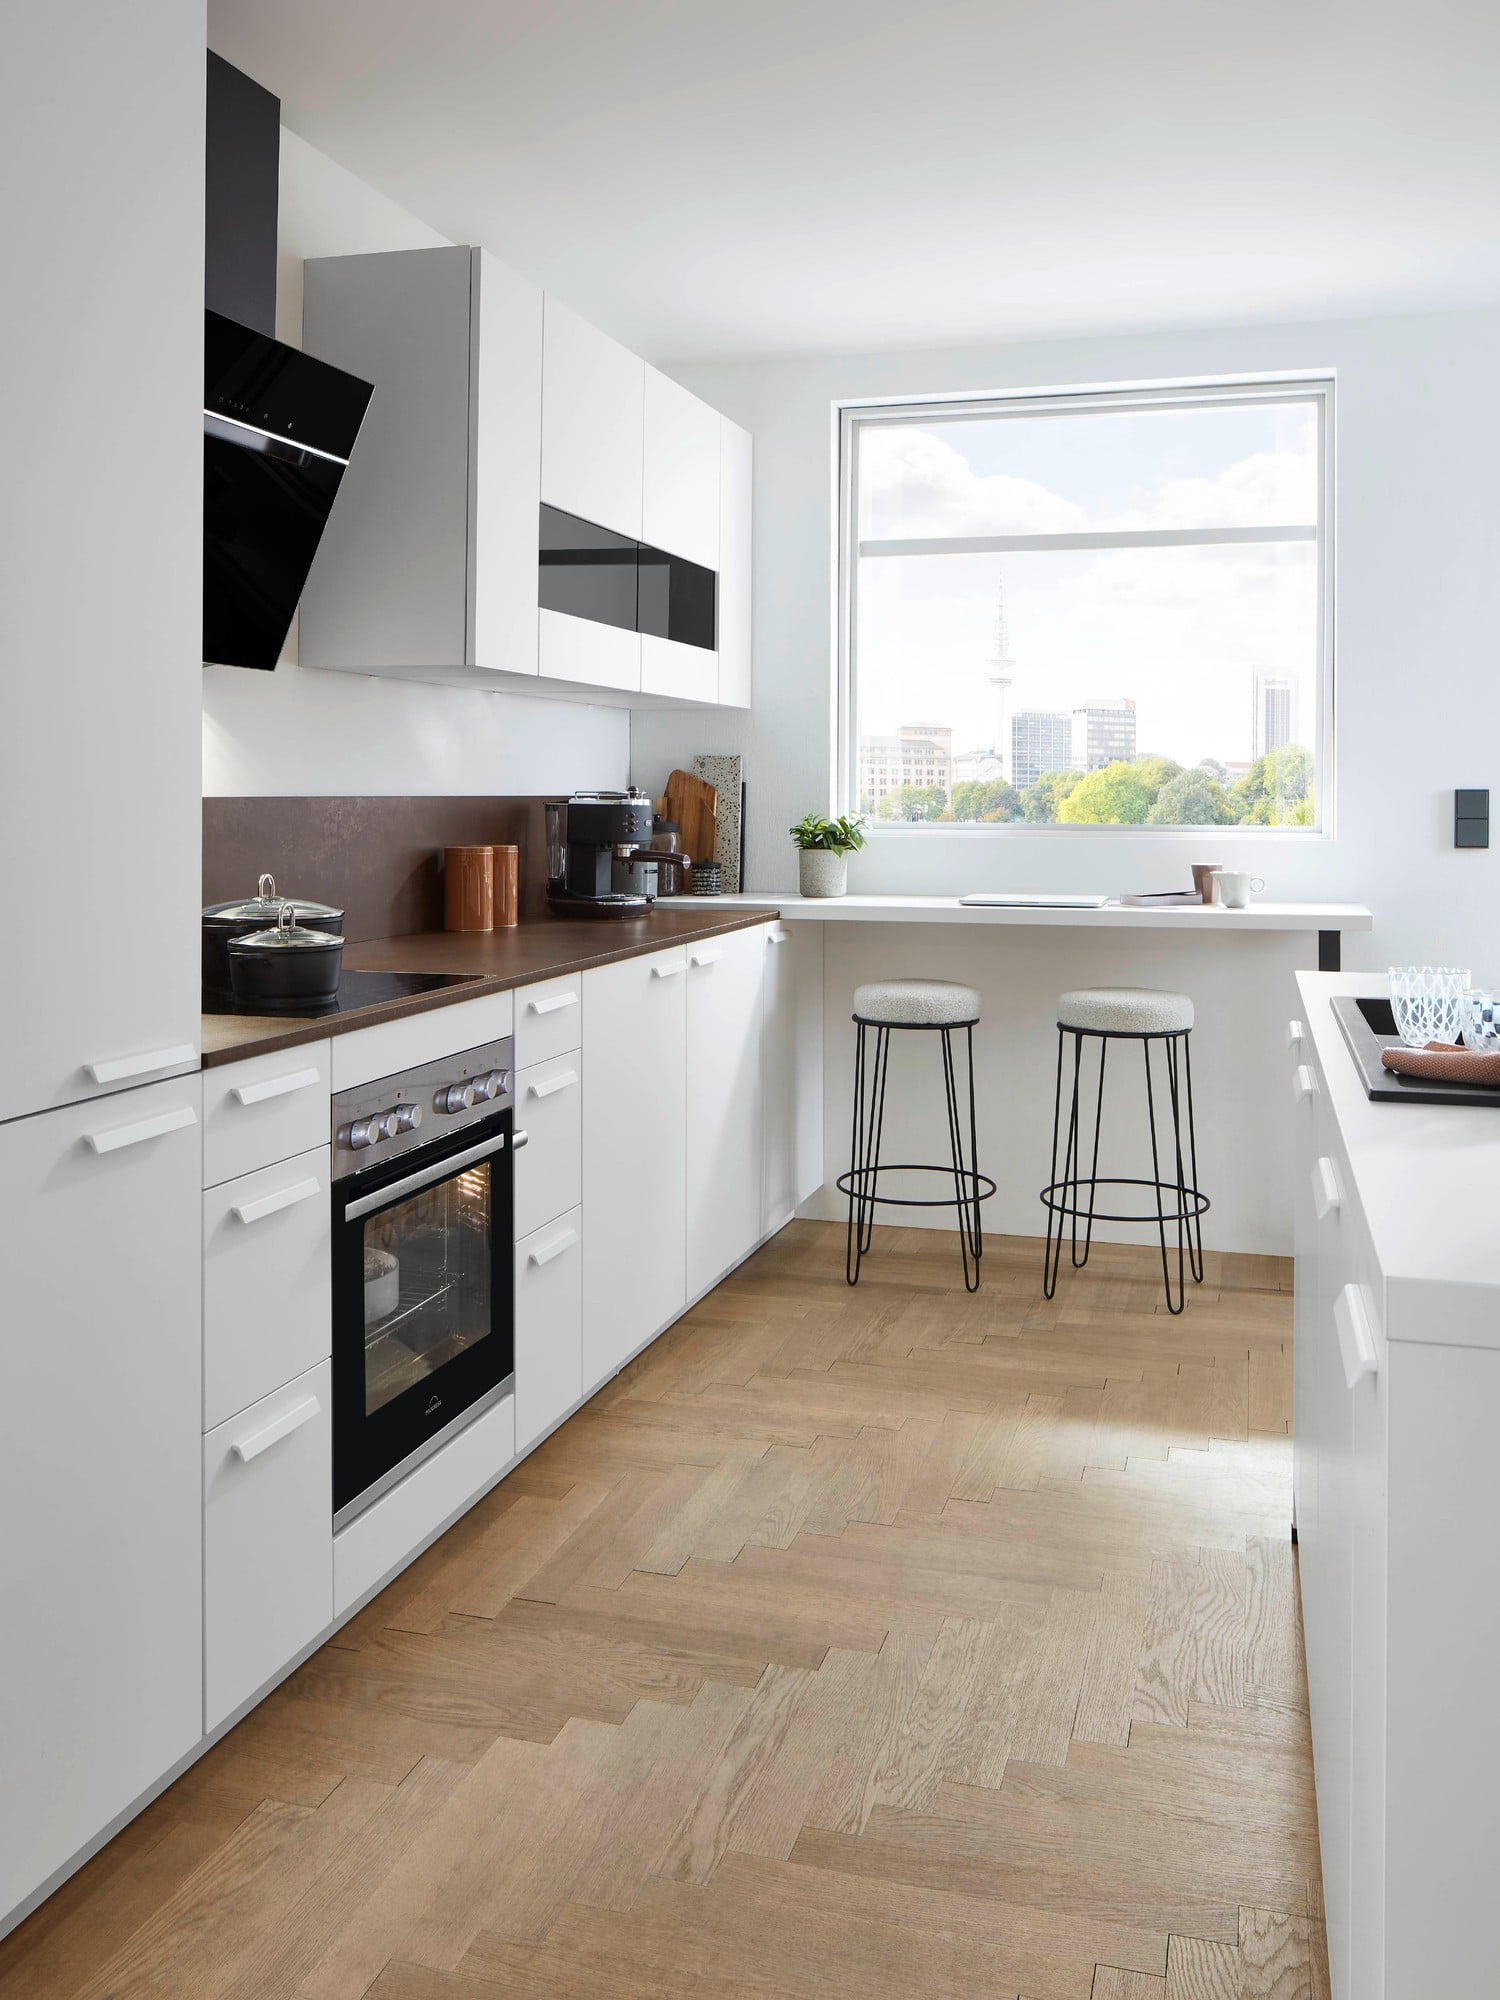 Světlá podlaha, bílý nábytek a lesklé povrchy v malé kuchyni skvěle fungují.